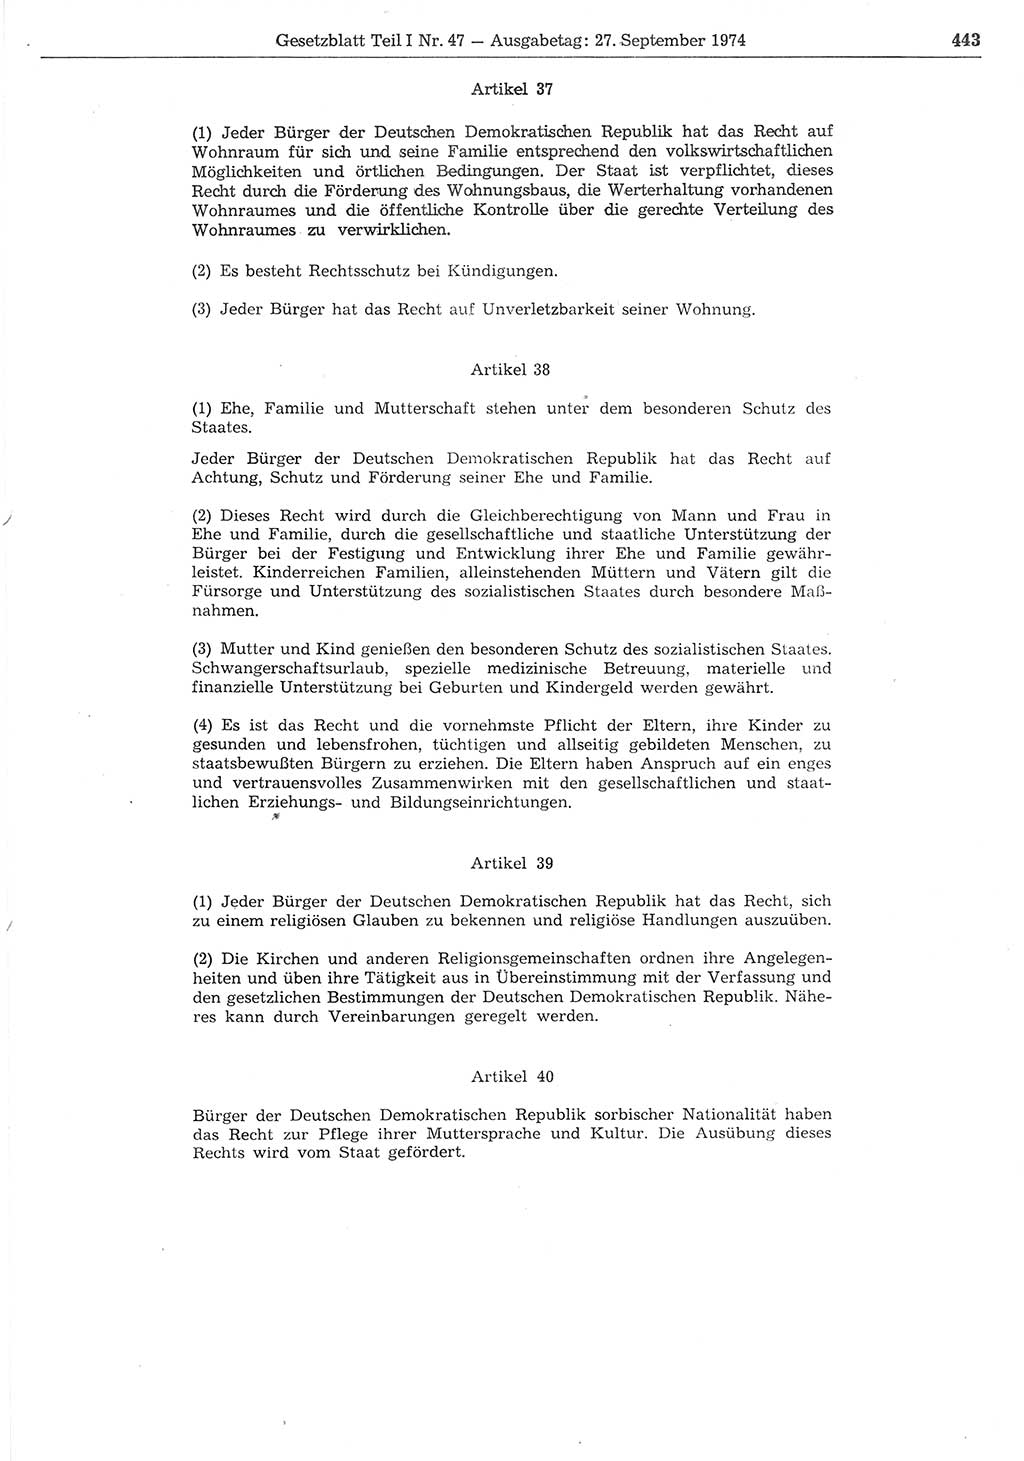 Gesetzblatt (GBl.) der Deutschen Demokratischen Republik (DDR) Teil Ⅰ 1974, Seite 443 (GBl. DDR Ⅰ 1974, S. 443)